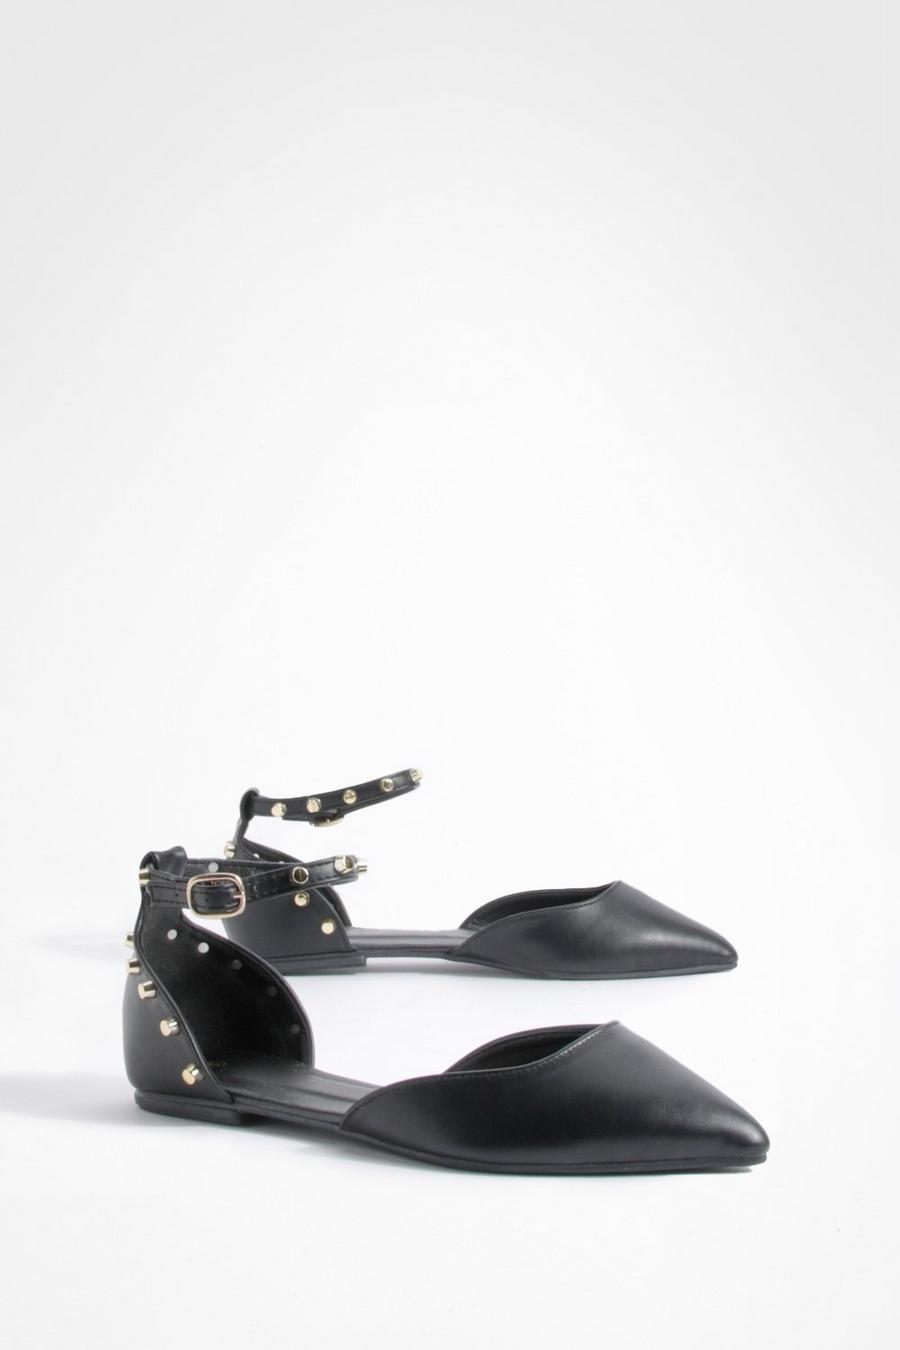 Scarpe basse a punta a calzata ampia con fascette alla caviglia e borchie, Black nero